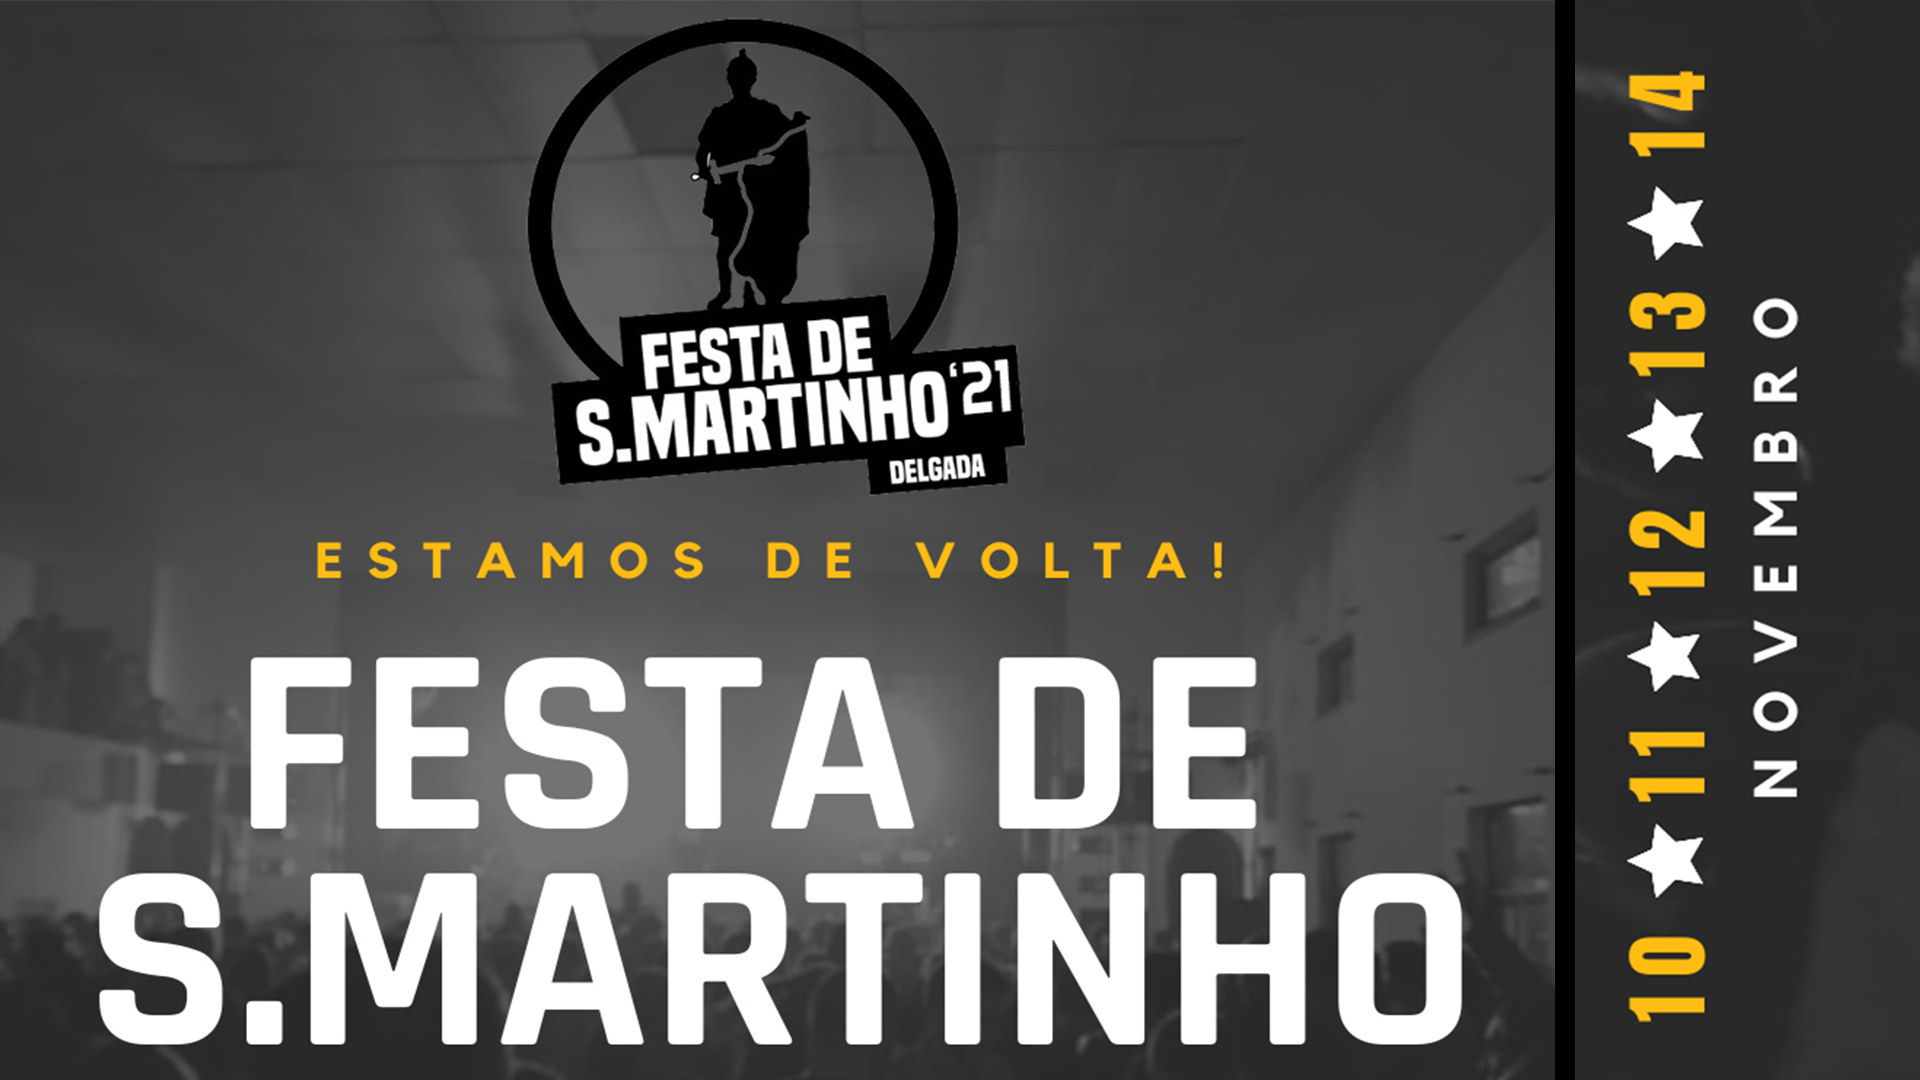 Festa de S.Martinho